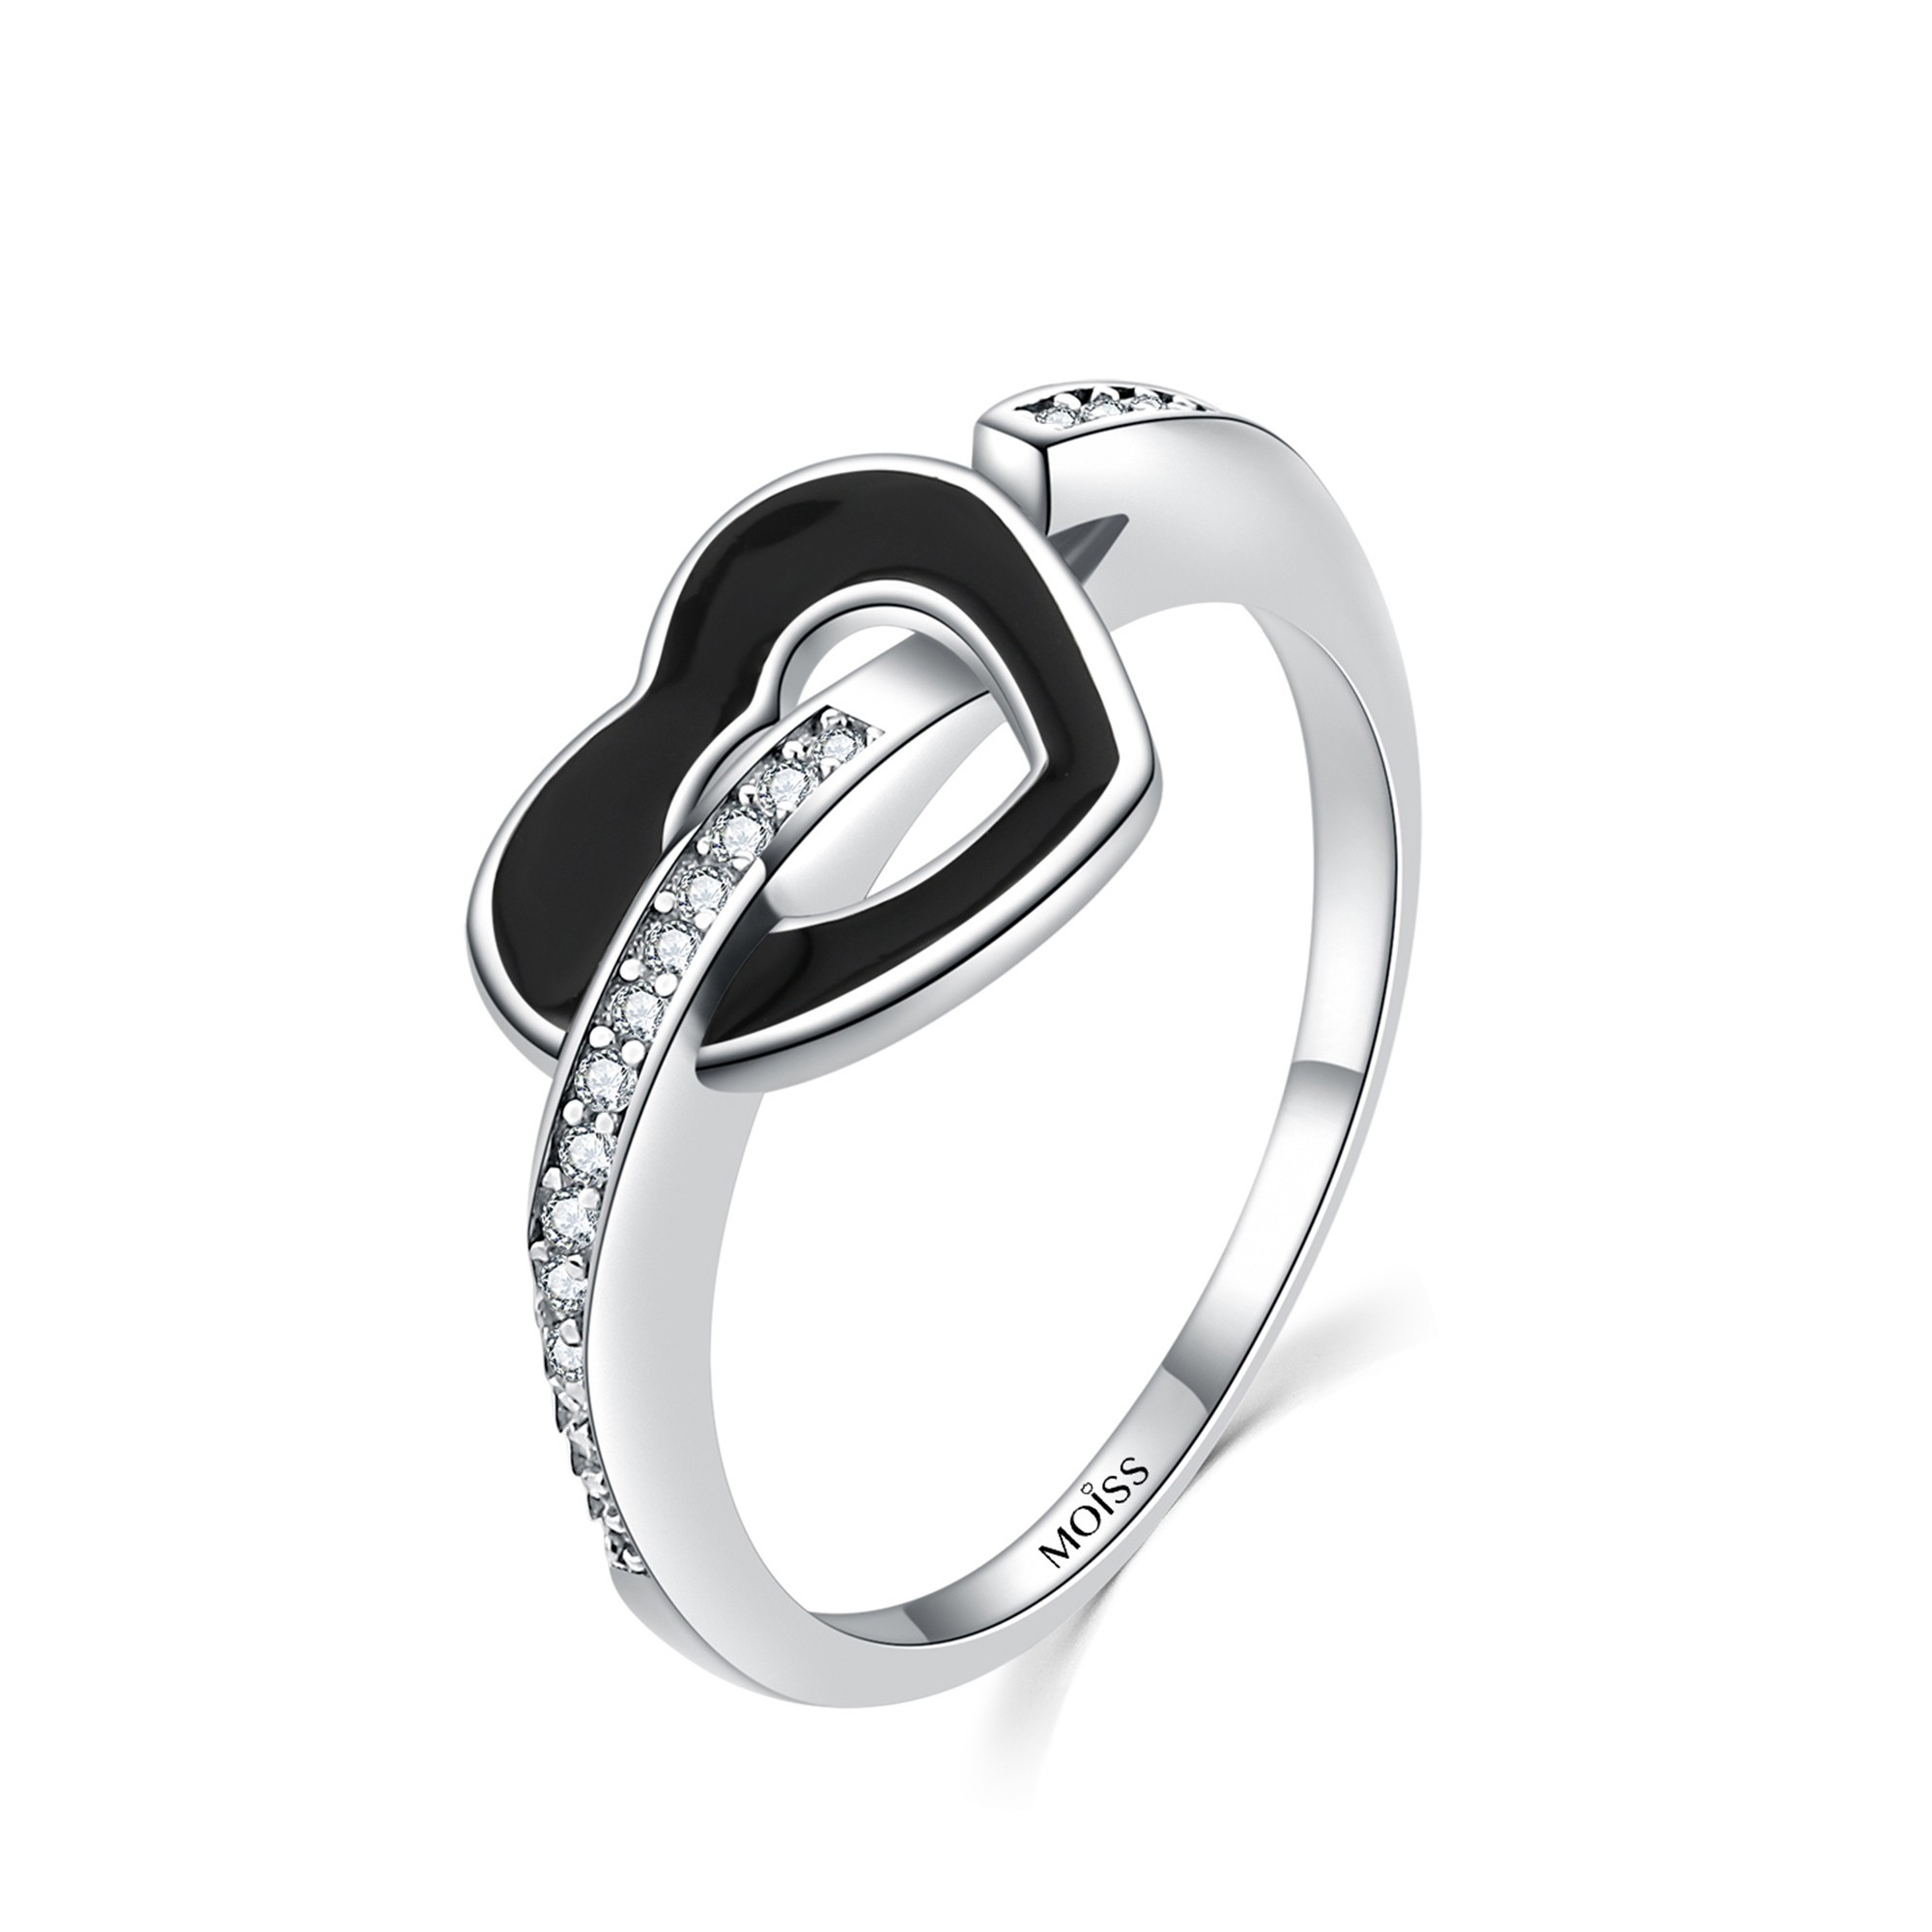 MOISS Moiss stříbrný prsten ČERNÉ SRDCE R0002060 Velikost 58 mm R0002064